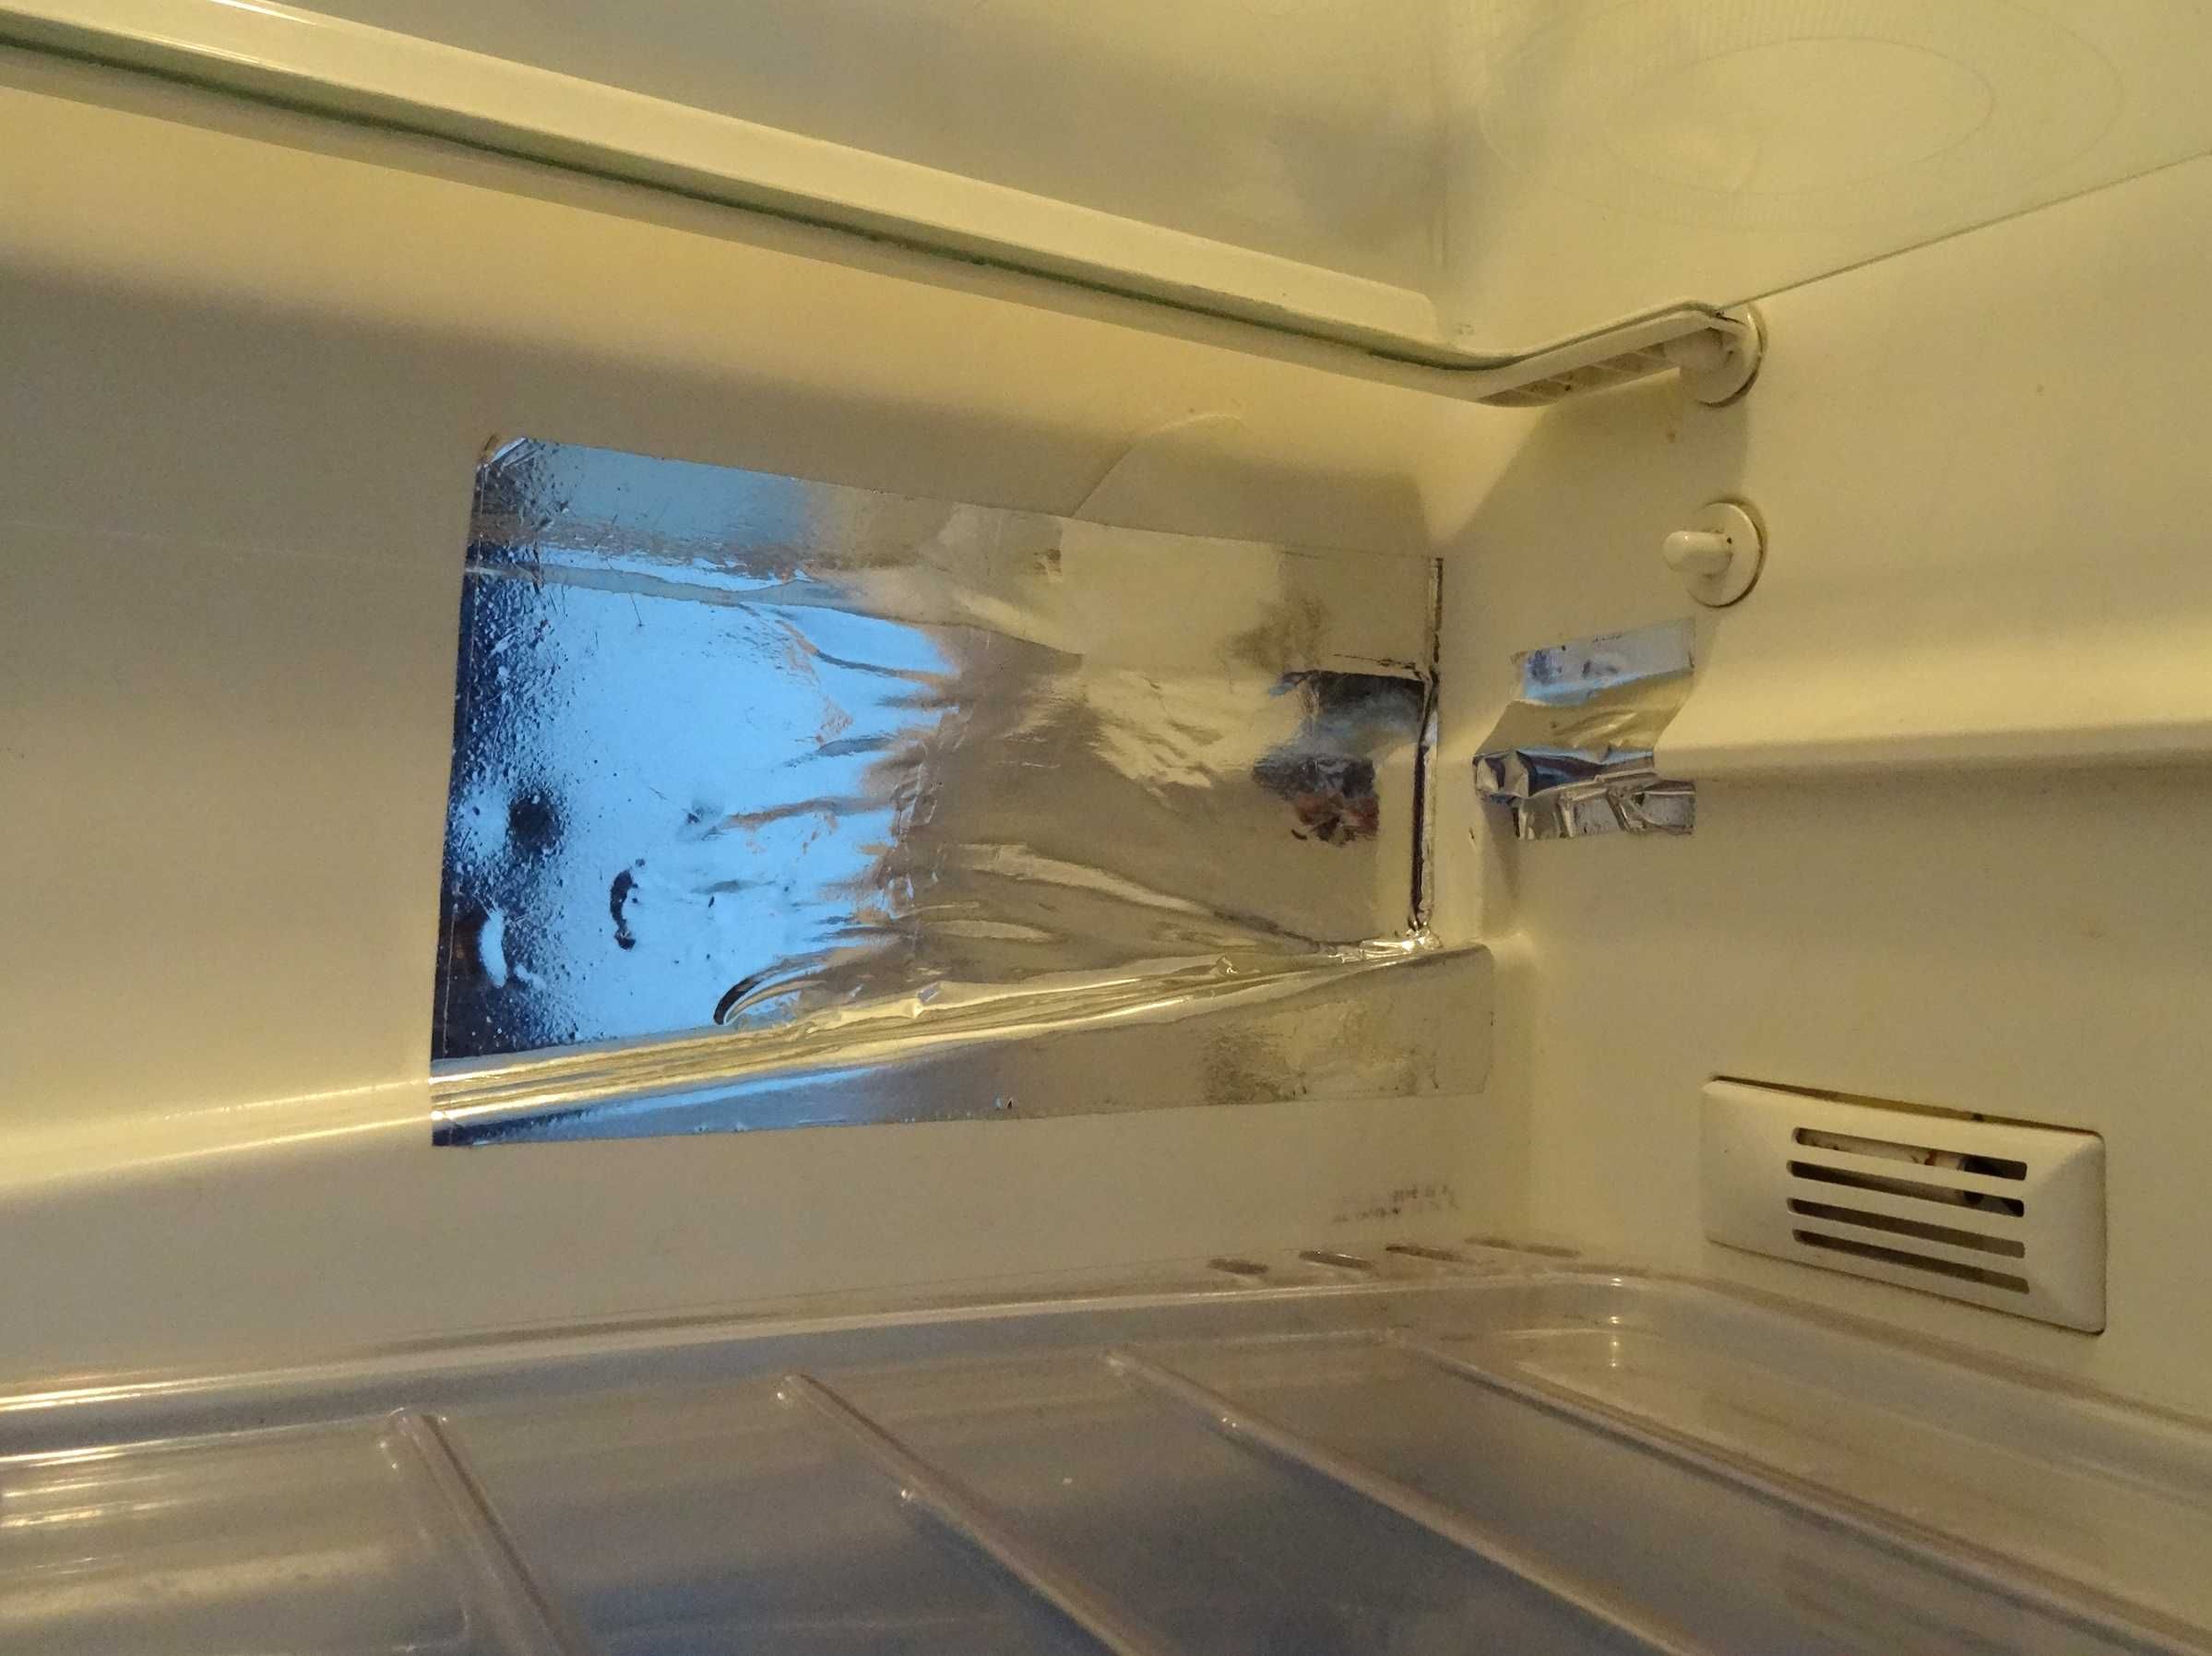 Холодильник ARDO